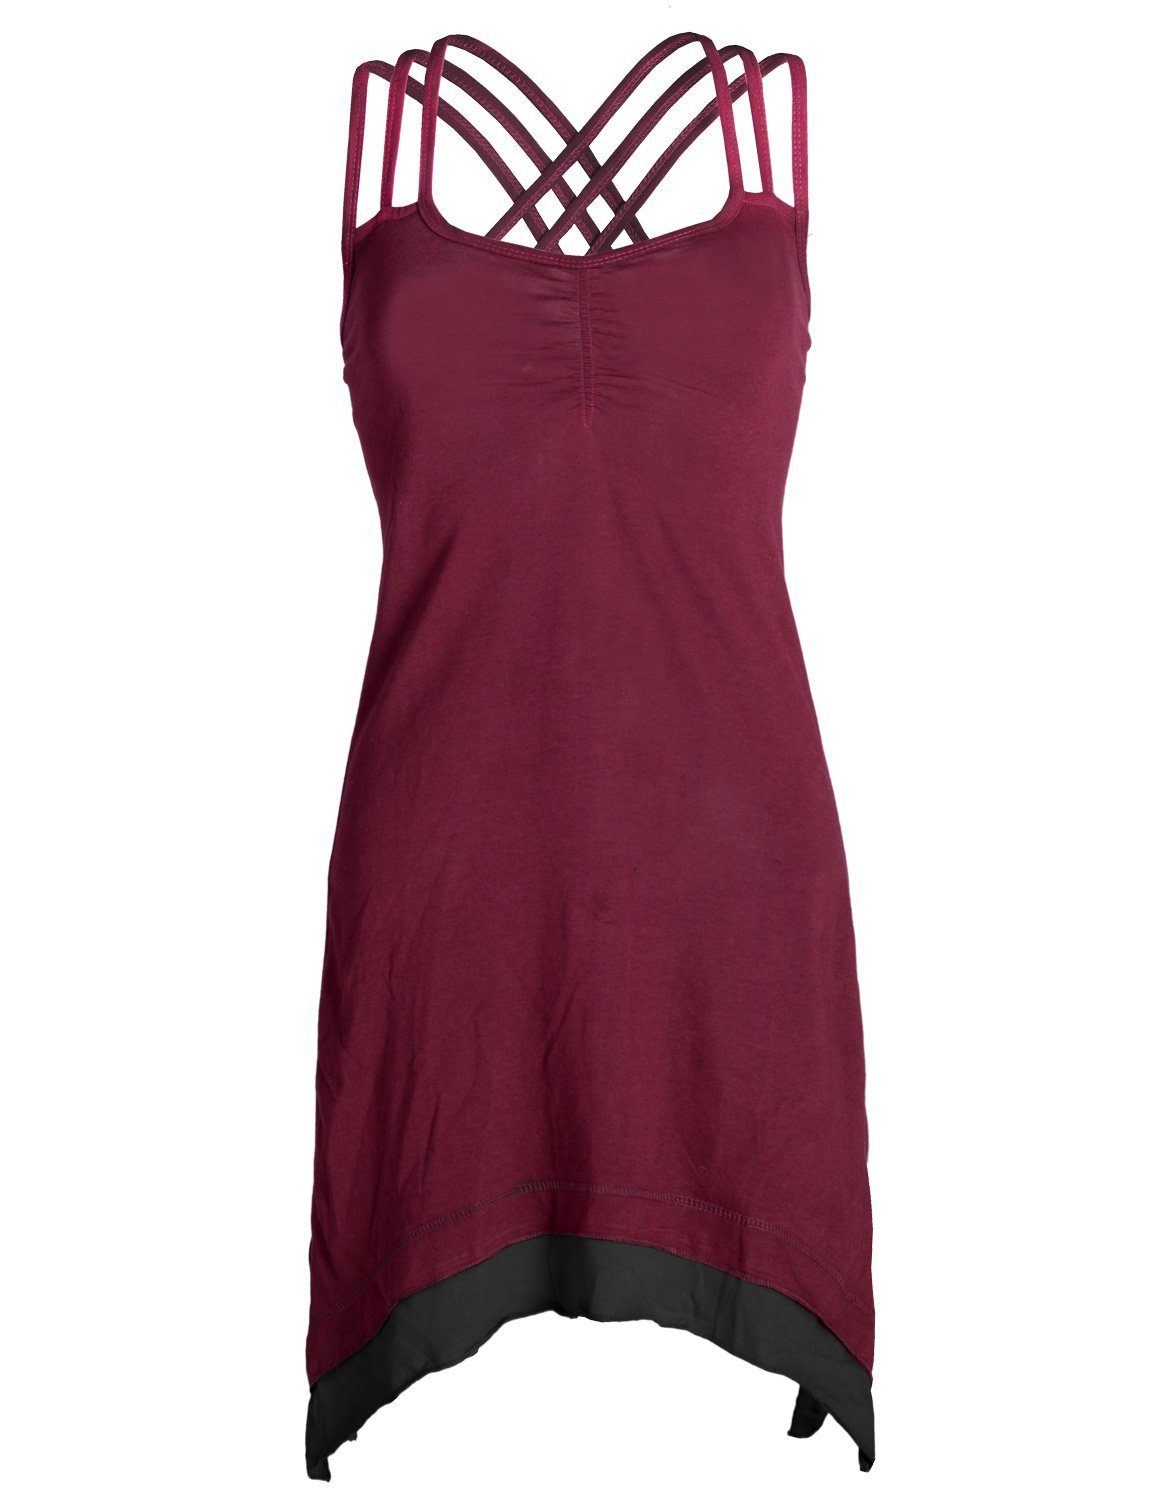 Vishes Sommerkleid Lagenlook Trägerkleid Organic Cotton mit Zipfeln Elfen, Hippie, Boho Style dunkelrot